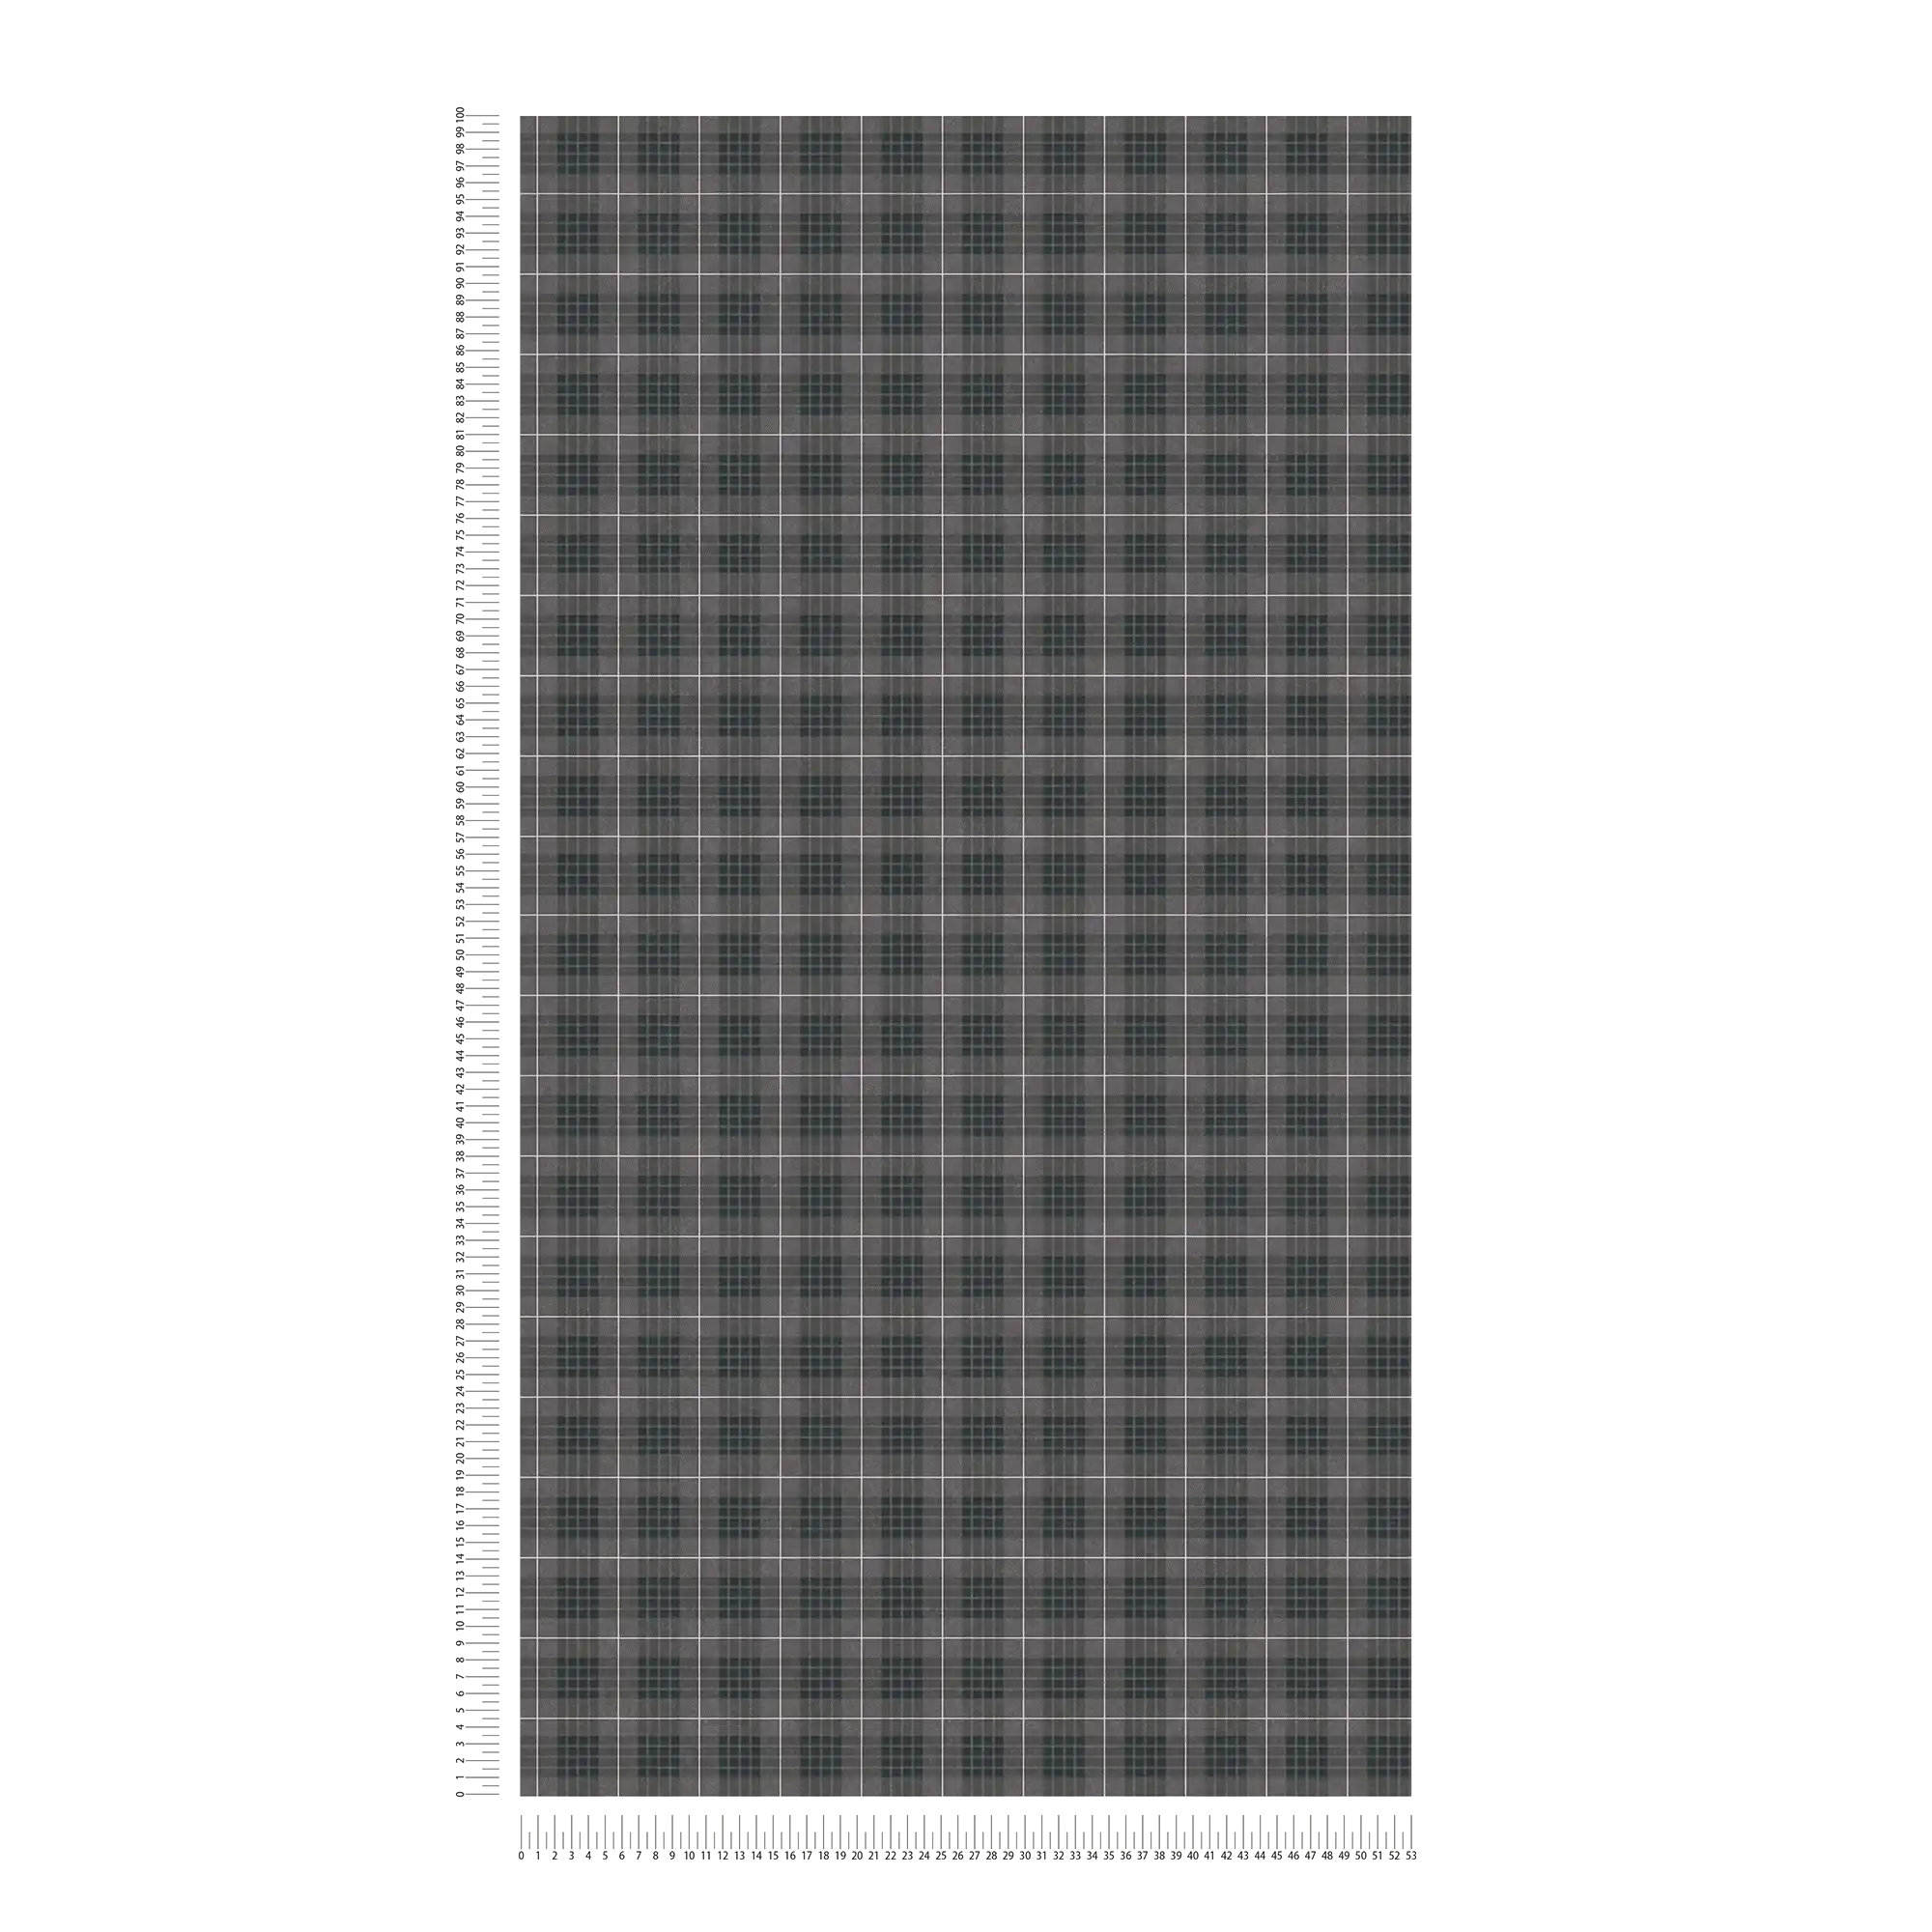             Carta da parati in tessuto tartan a quadri - grigio, bianco
        